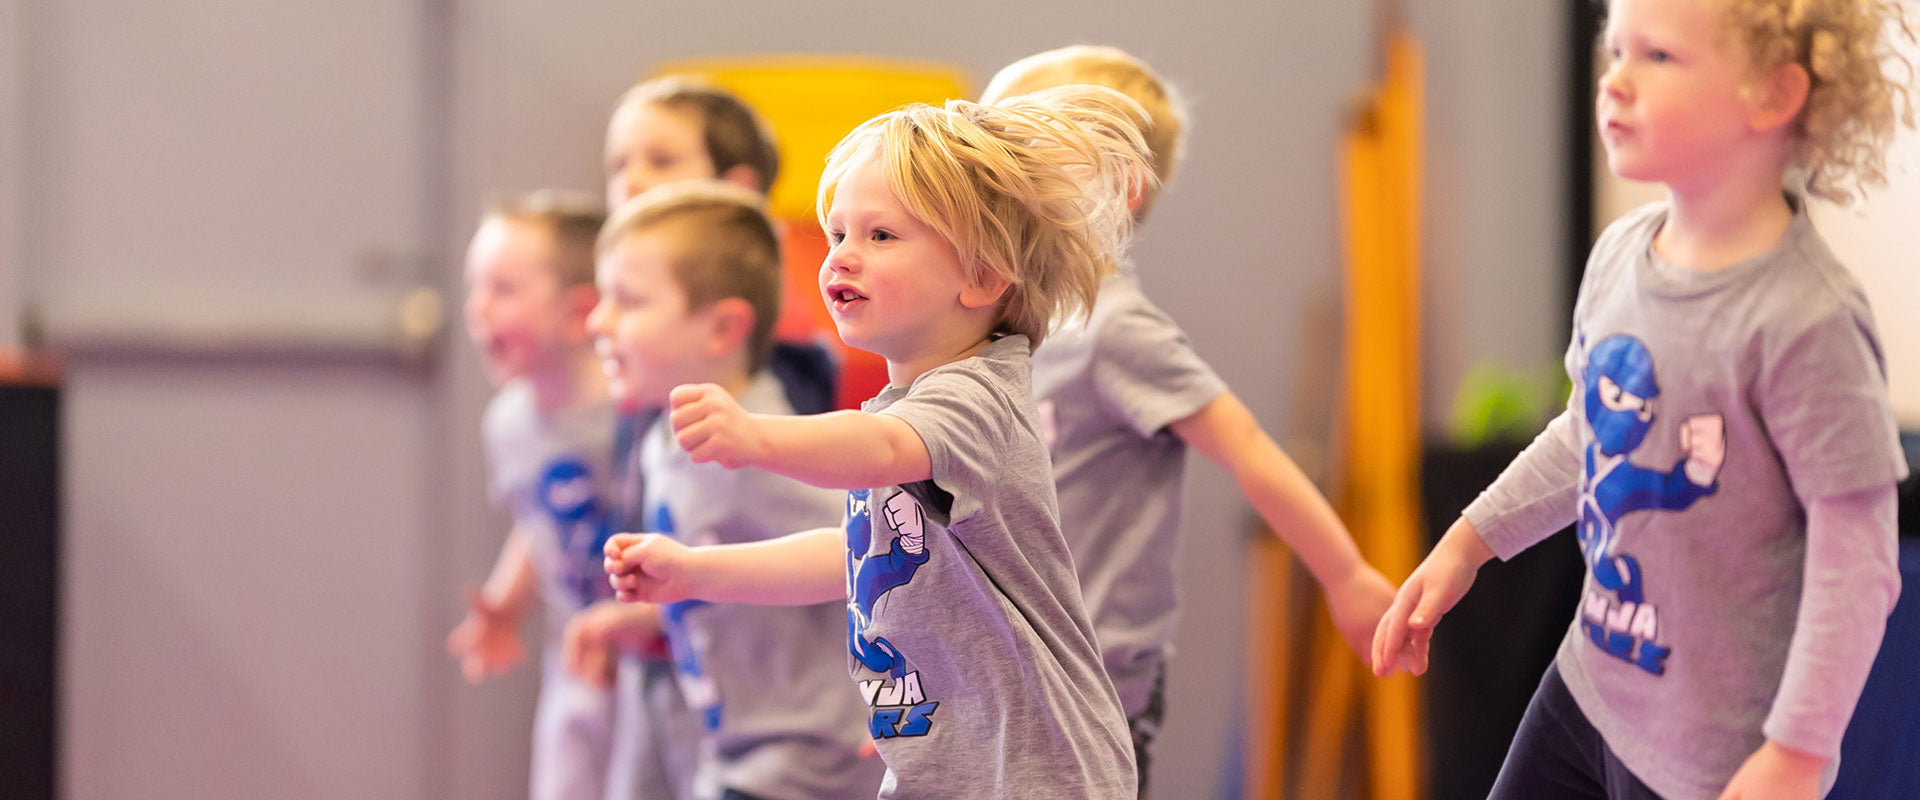 Ninja Stars martial arts classes for preschoolers Ettingshausens Sutherland Shire Kirrawee 